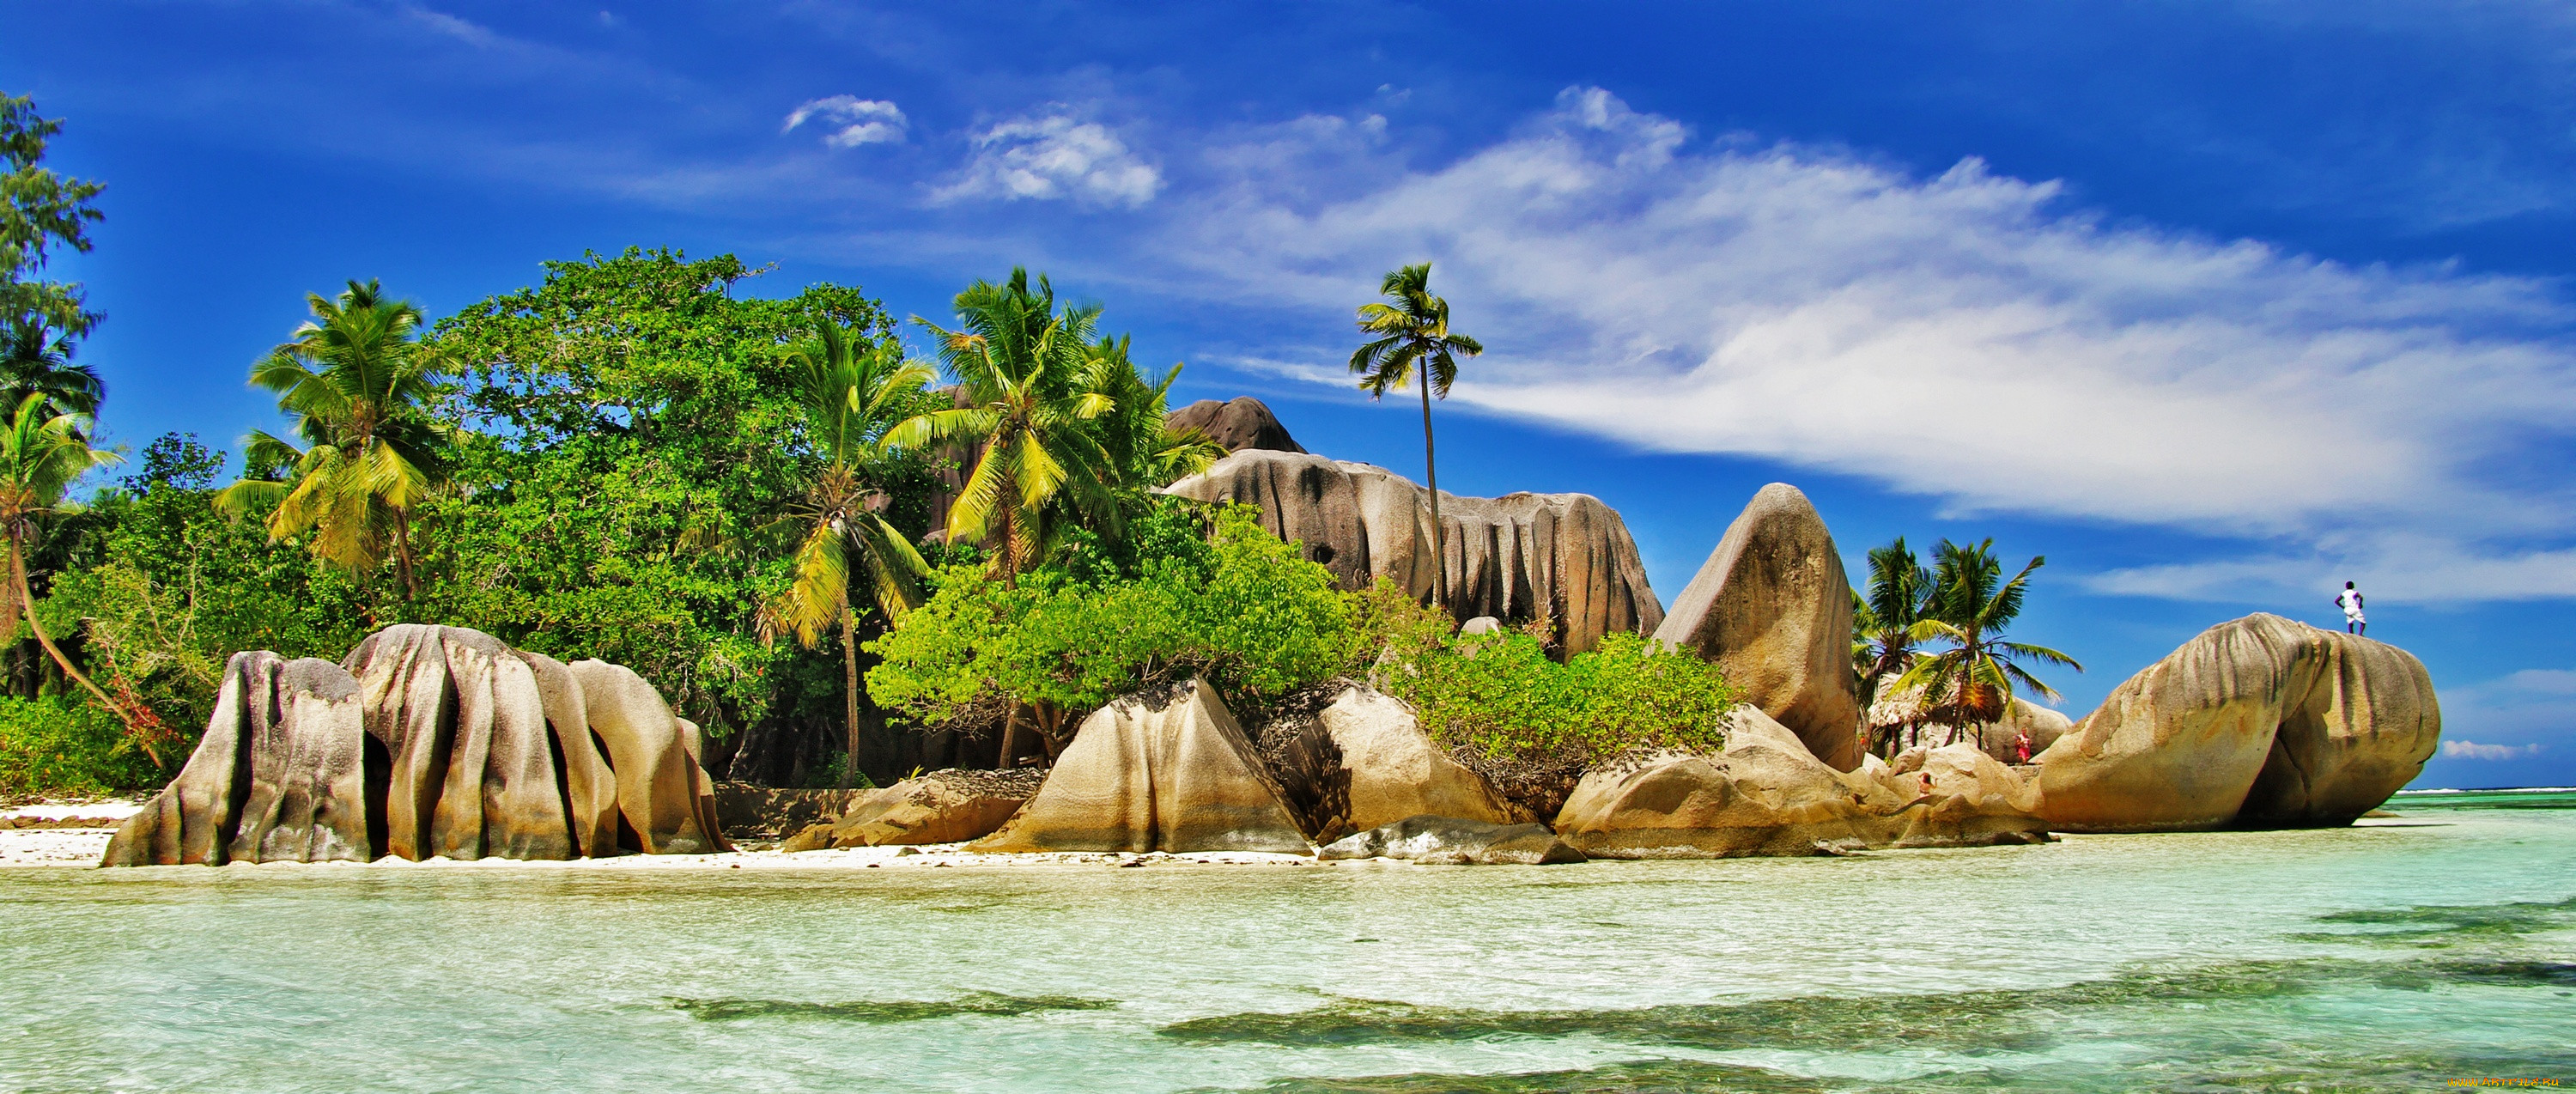 Ла-Диг Сейшельские острова фото